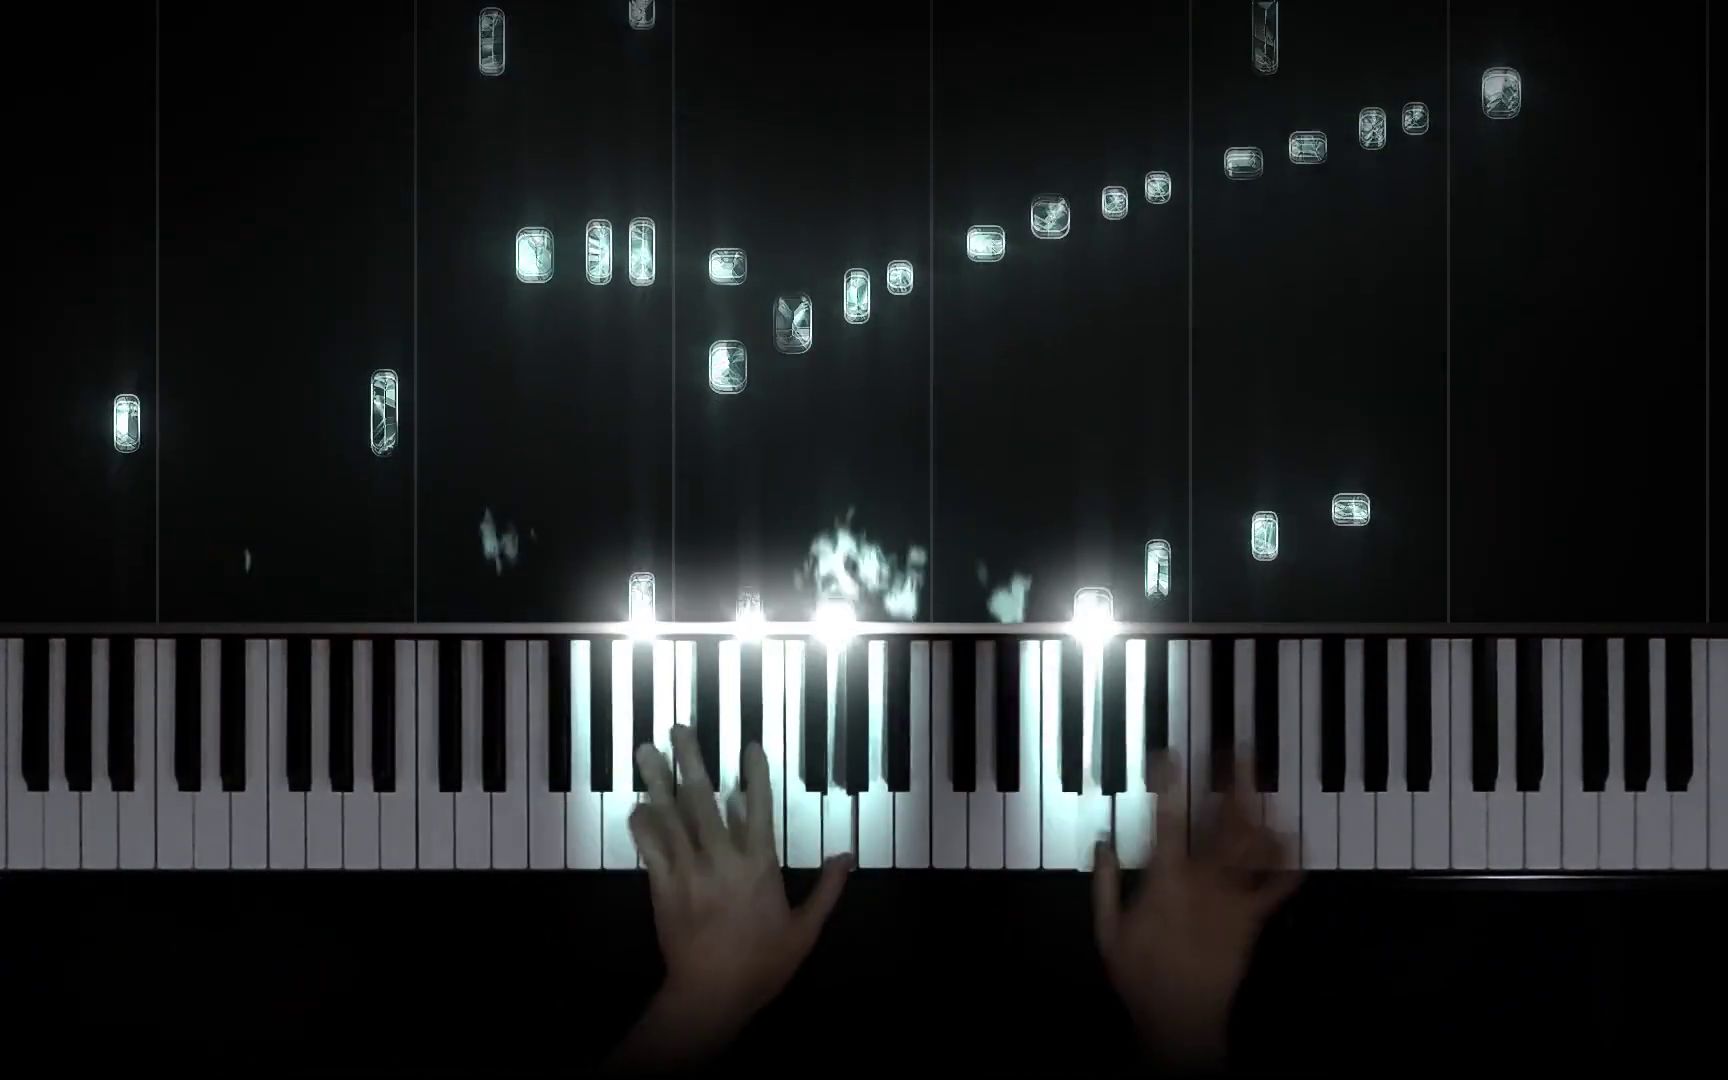 【特效钢琴】少女的祈祷 La prière d'une vierge 巴达捷夫斯卡 - by The Flaming Piano